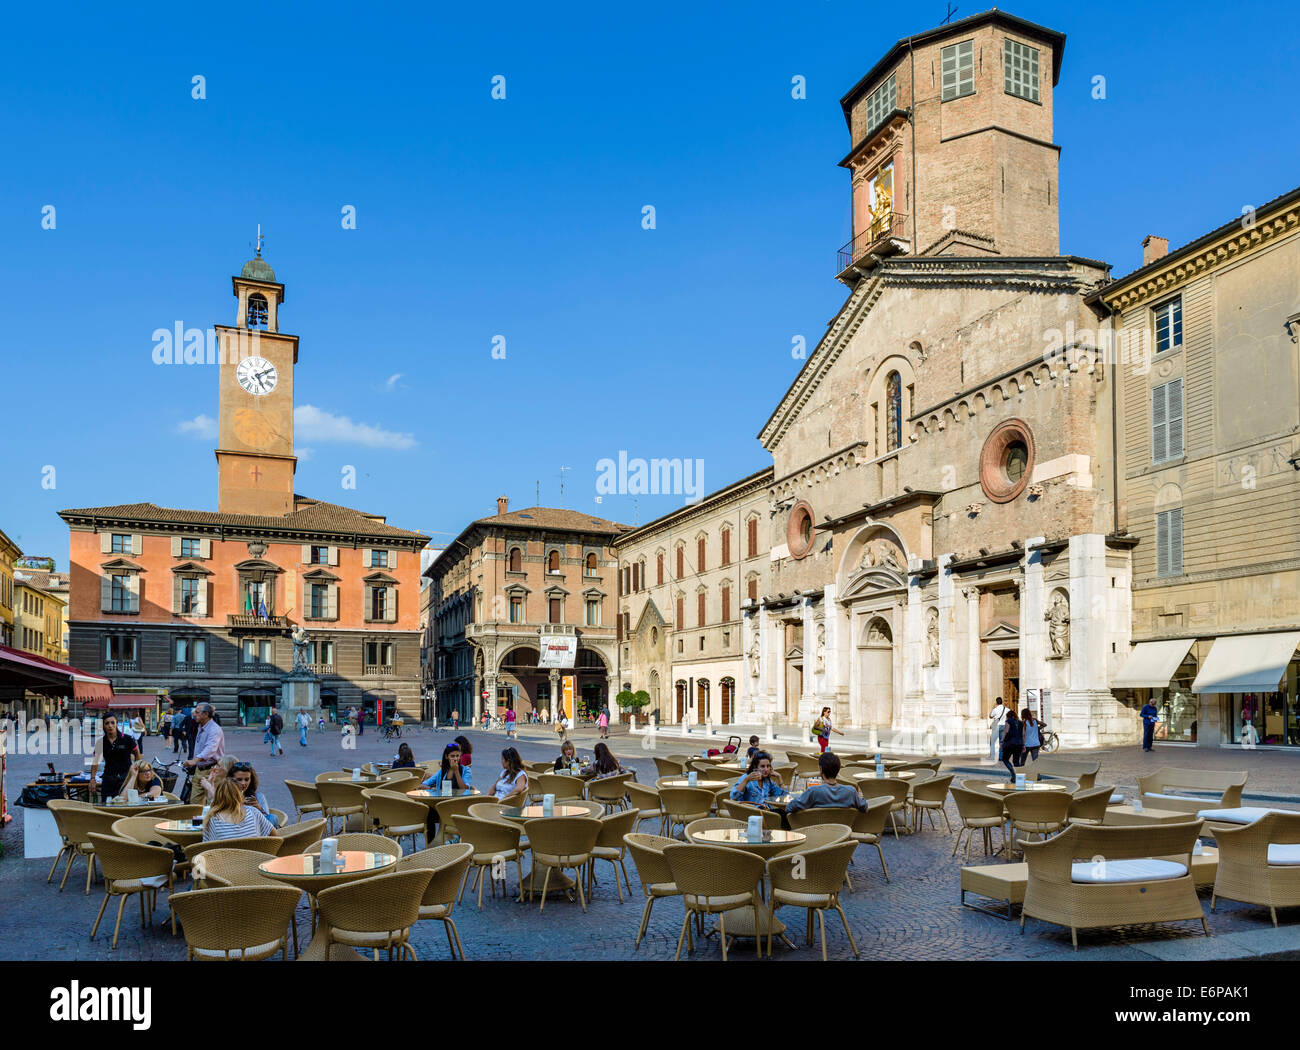 Cafe di fronte al Duomo, Piazza Prampolini, Reggio Emilia (Reggio Emilia), Emilia Romagna, Italia Foto Stock